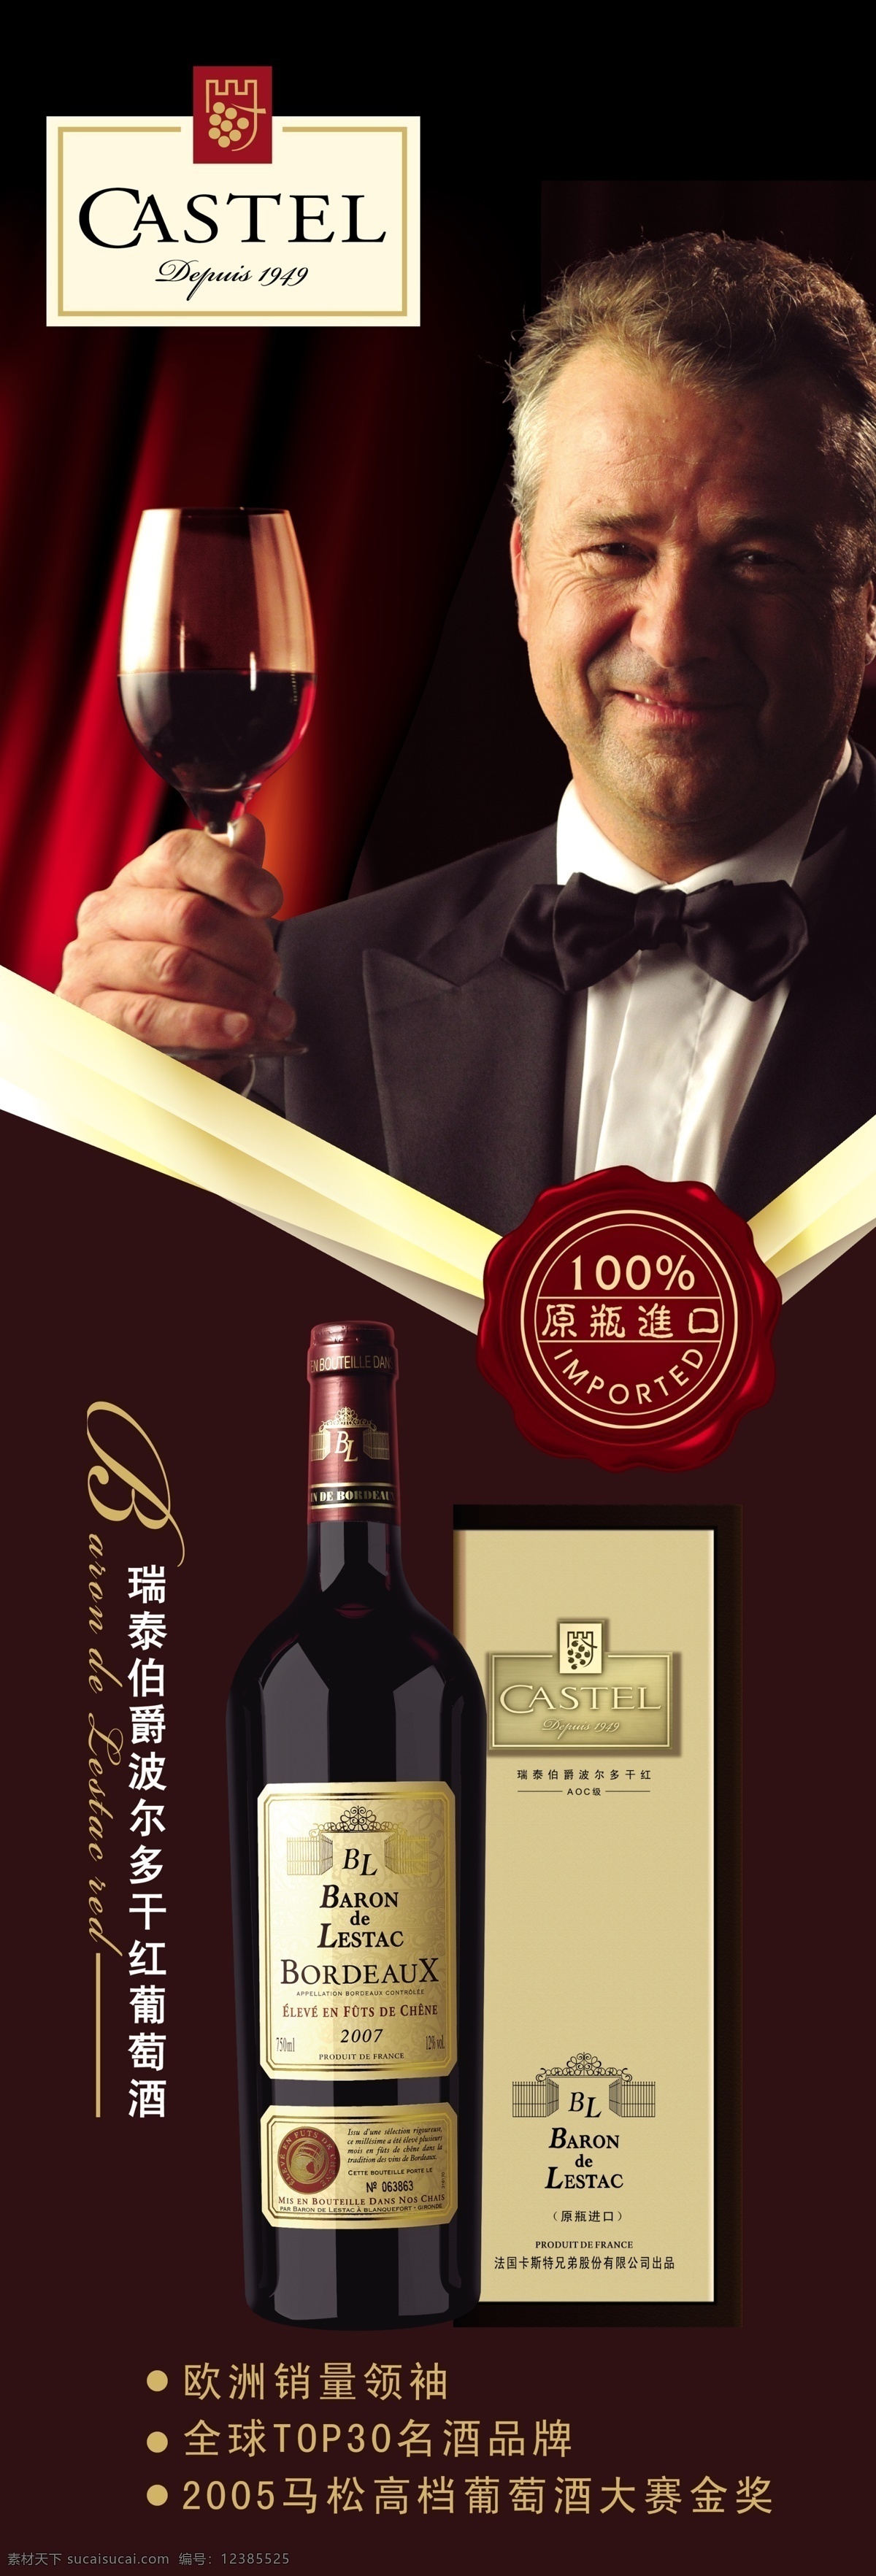 法国 干红葡萄酒 广告 广告设计模板 红酒 葡萄酒 源文件 卡斯特 高精度红酒 干红 其他海报设计